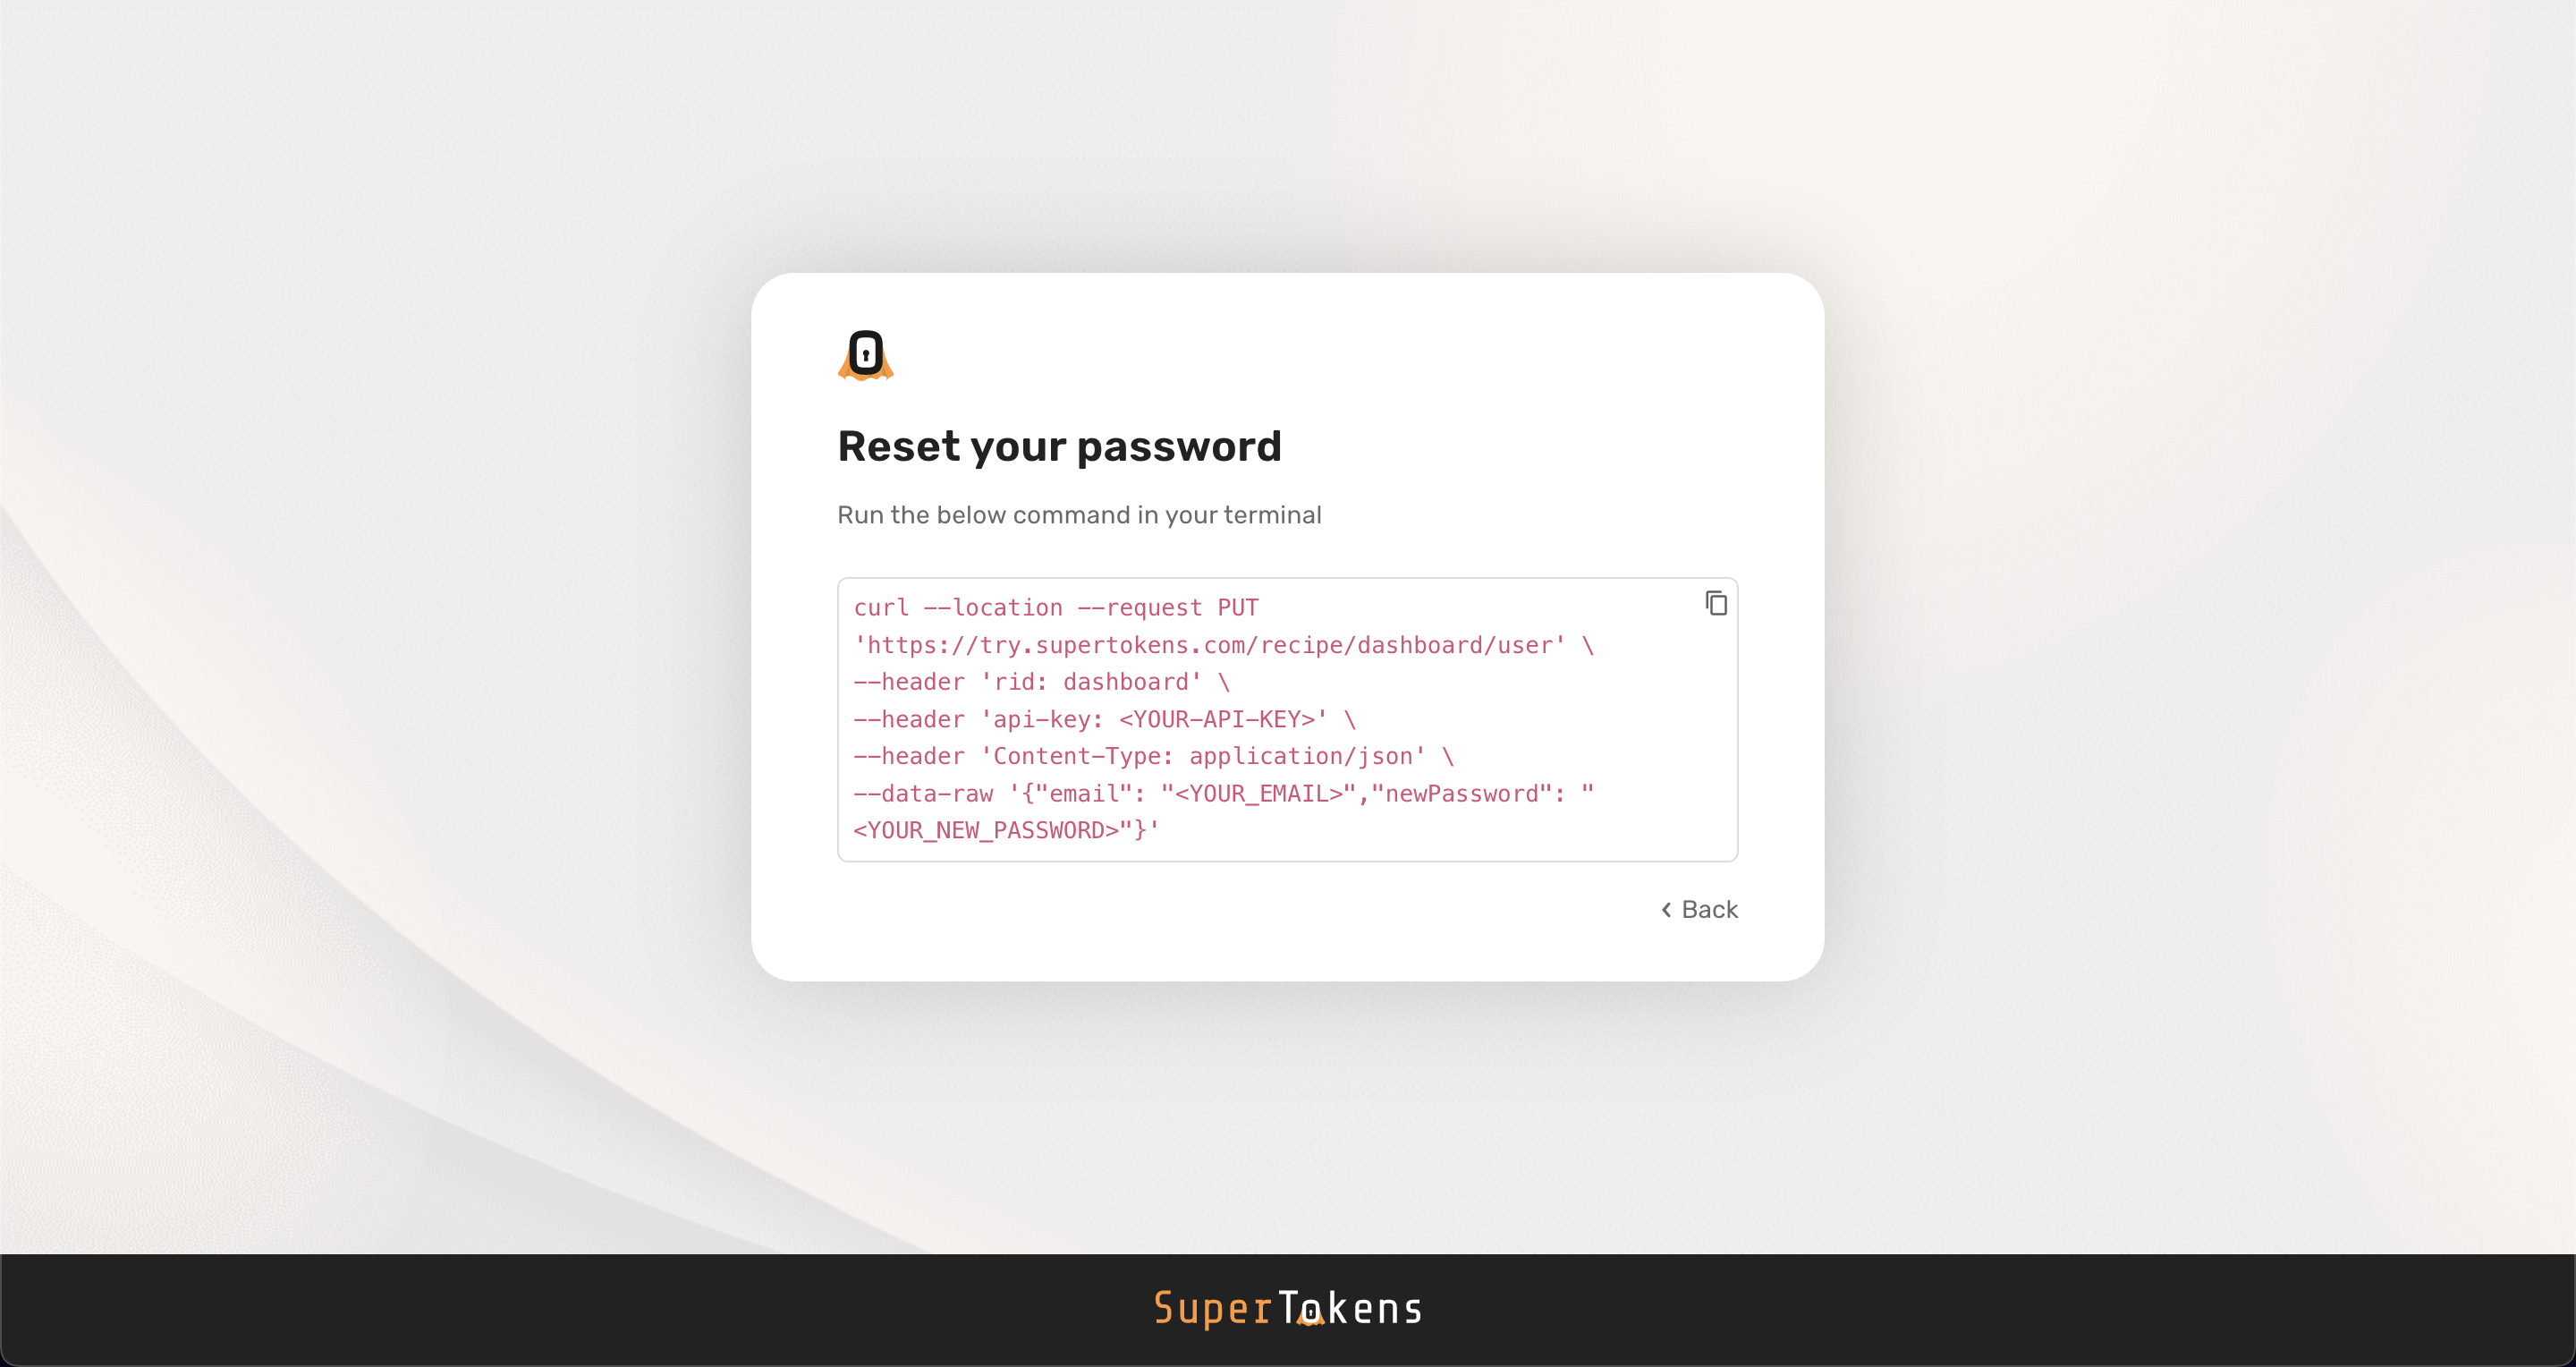 Reset your password screen UI